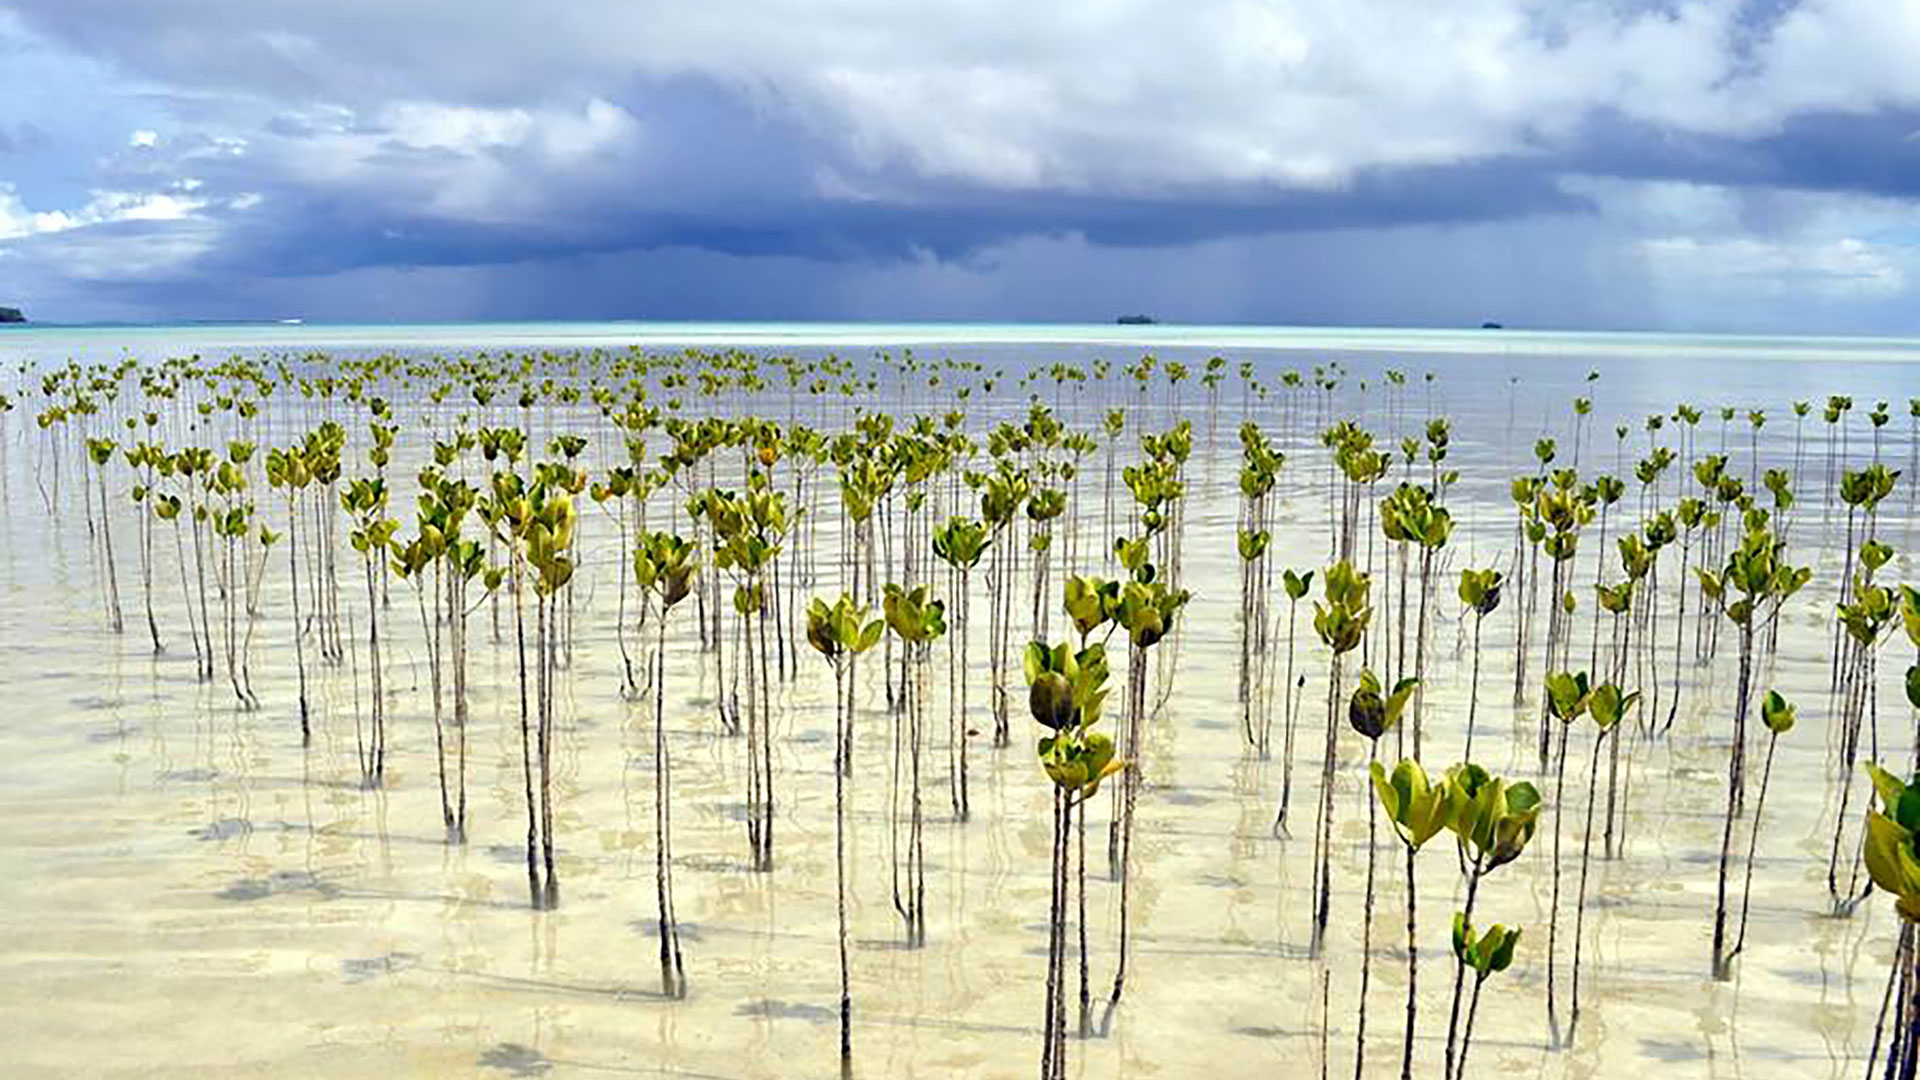 Seedlings growing in the sea